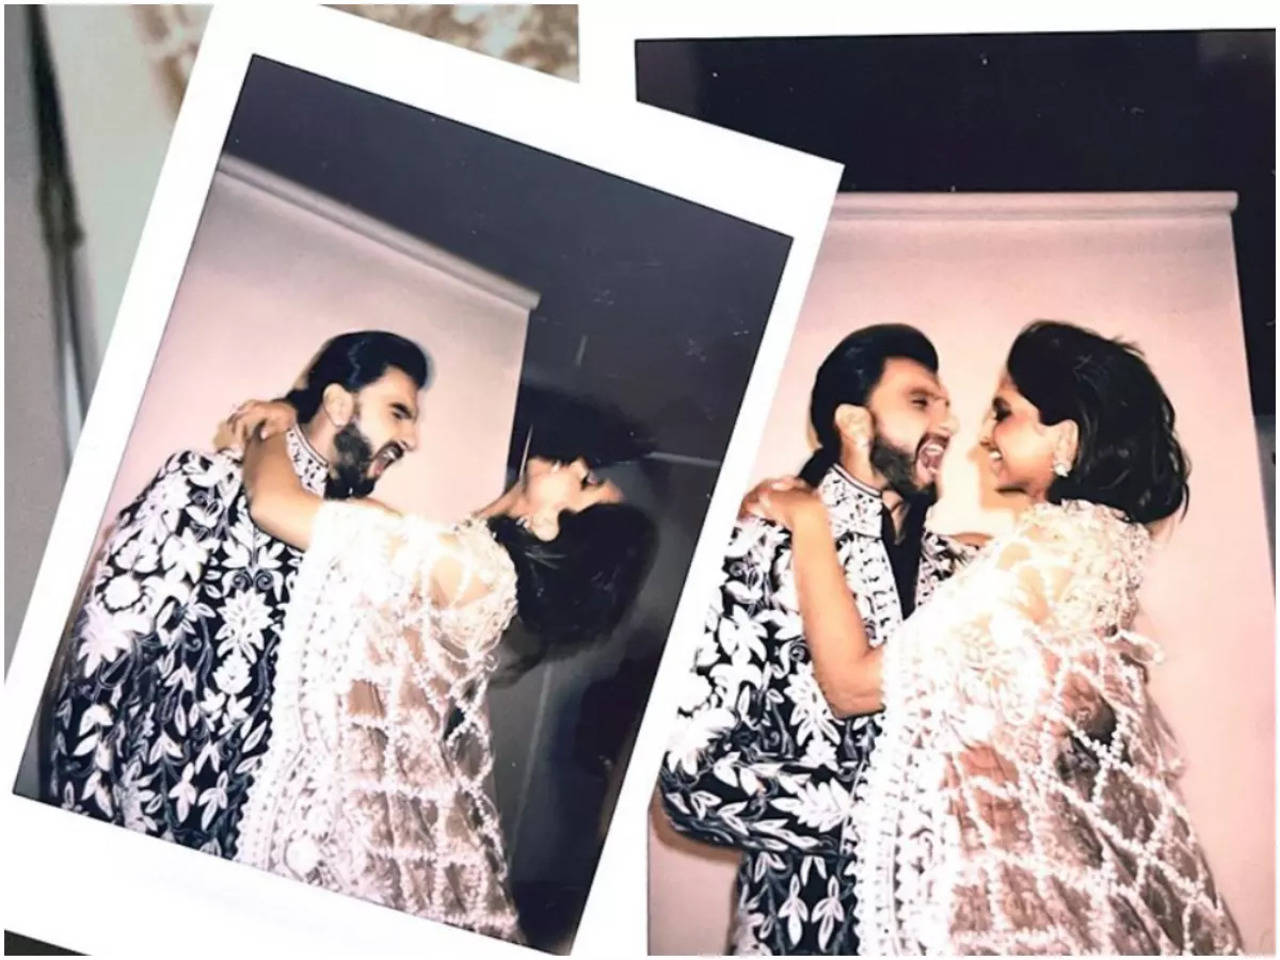 Deepika Padukone's new Louis Vuitton update leaves Ranveer Singh impressed:  'Fun, elegant, modern, intelligent and classic